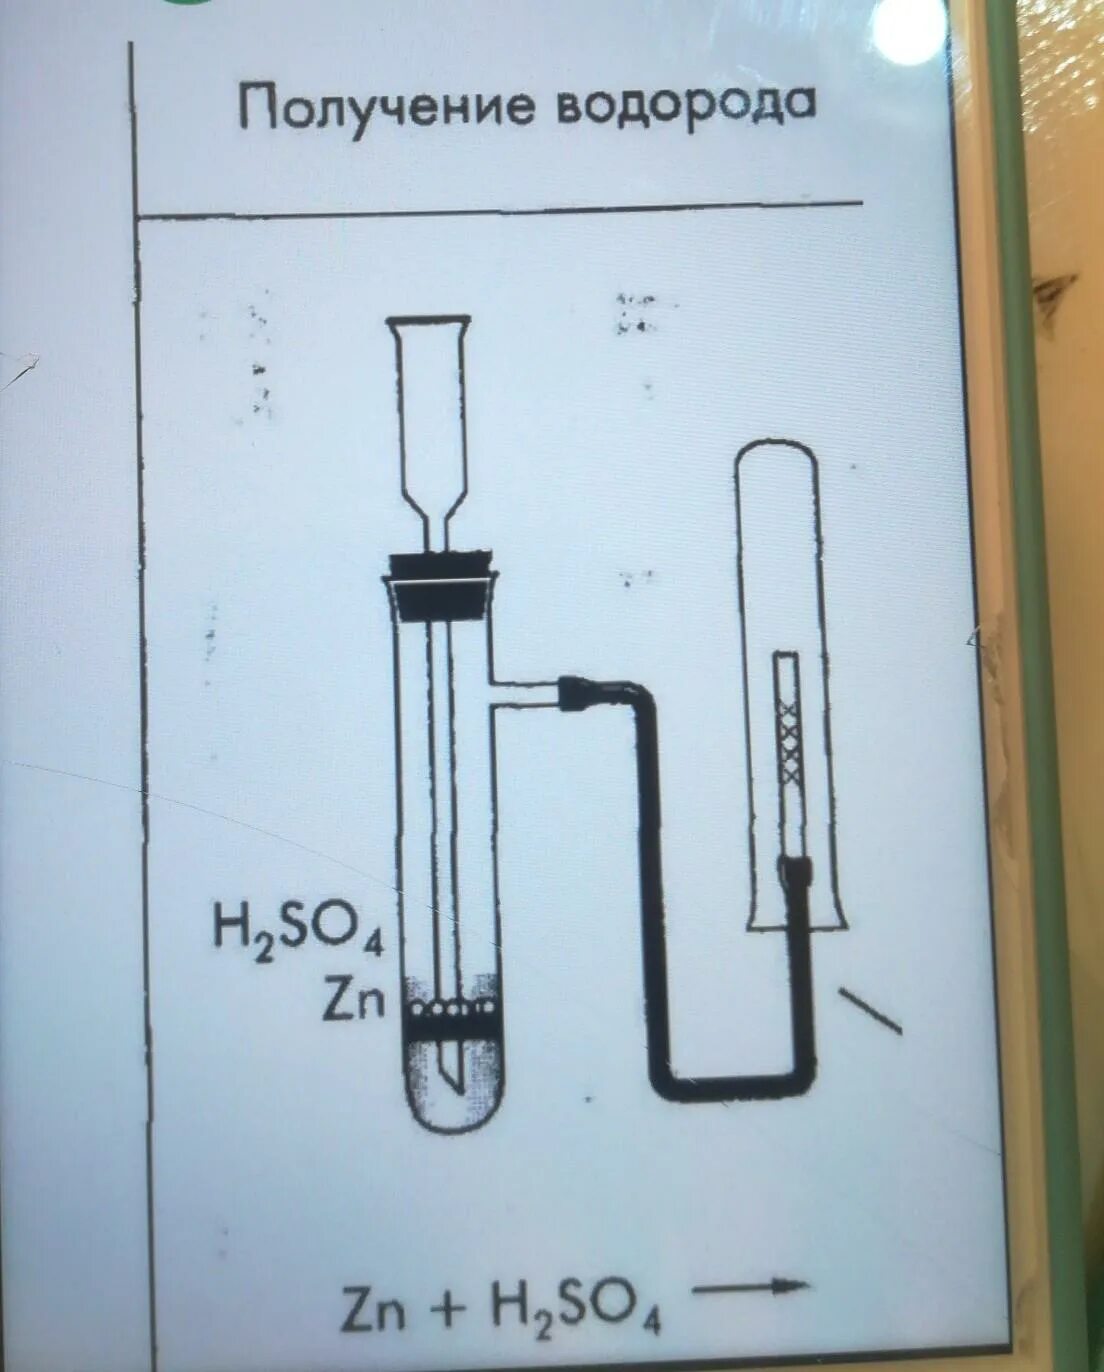 Лабораторный способ получения водорода. Лабораторное получение водорода. Схема получения водорода. Получение водорода с помощью прибора.